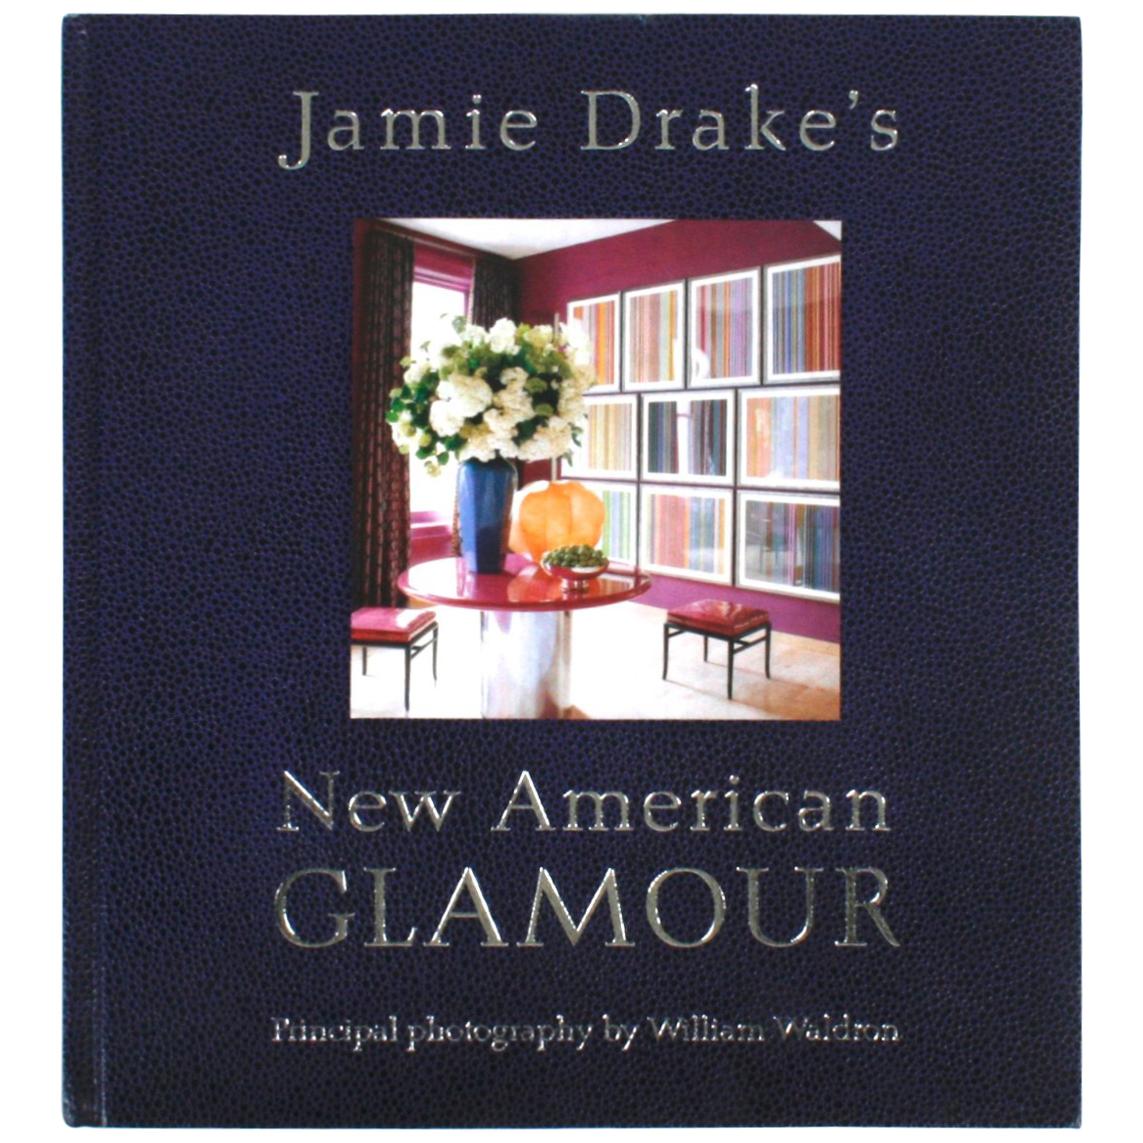 Le Nouveau Glamour Américain de Jamie Drake, première édition en vente